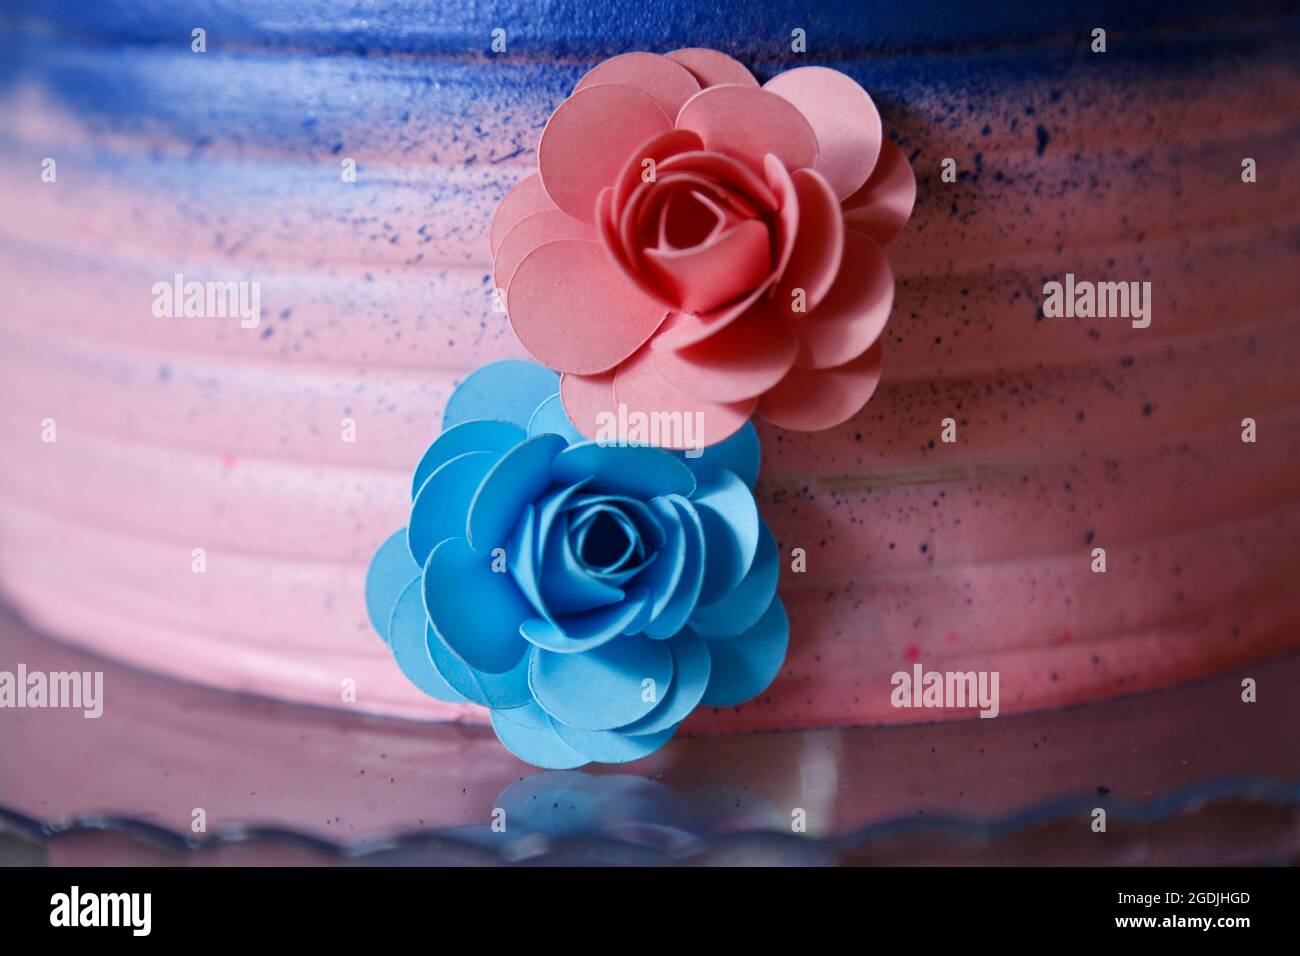 Blau und rosa Kuchen und Blumen auf Offenbarung Tee-Party - Baby Geschlecht offenbaren Partei Konzept Stockfoto